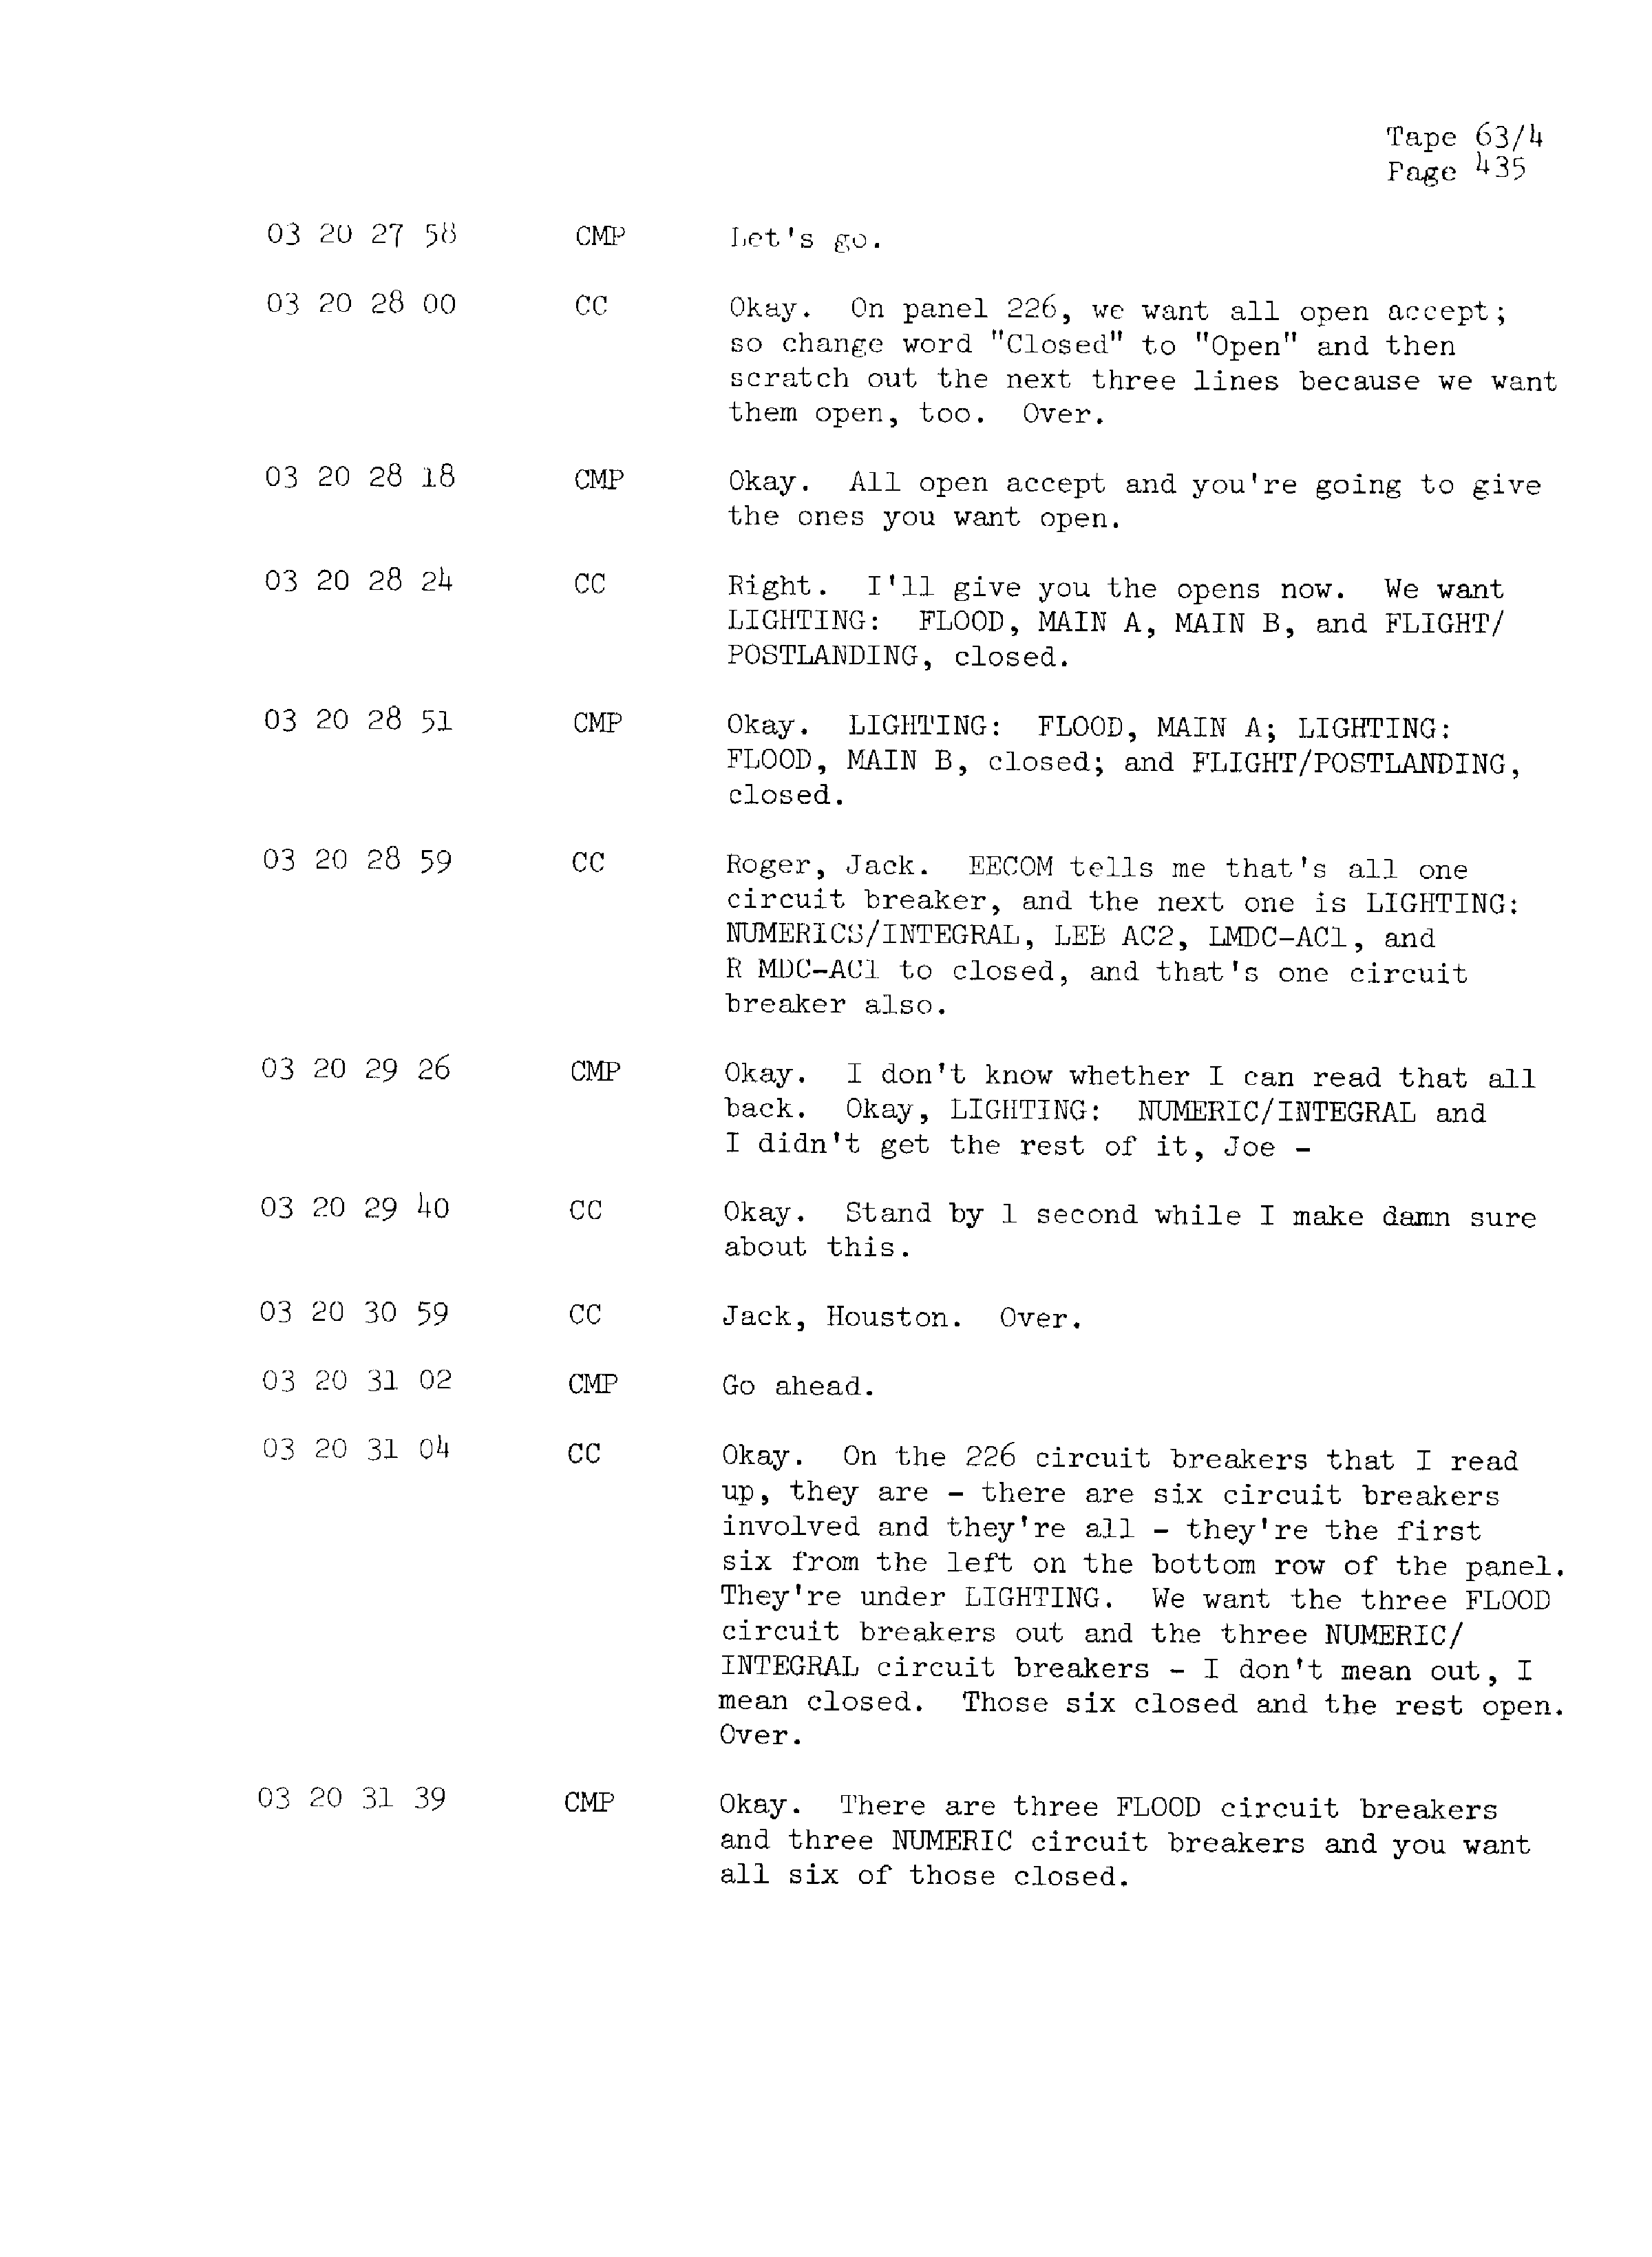 Page 442 of Apollo 13’s original transcript